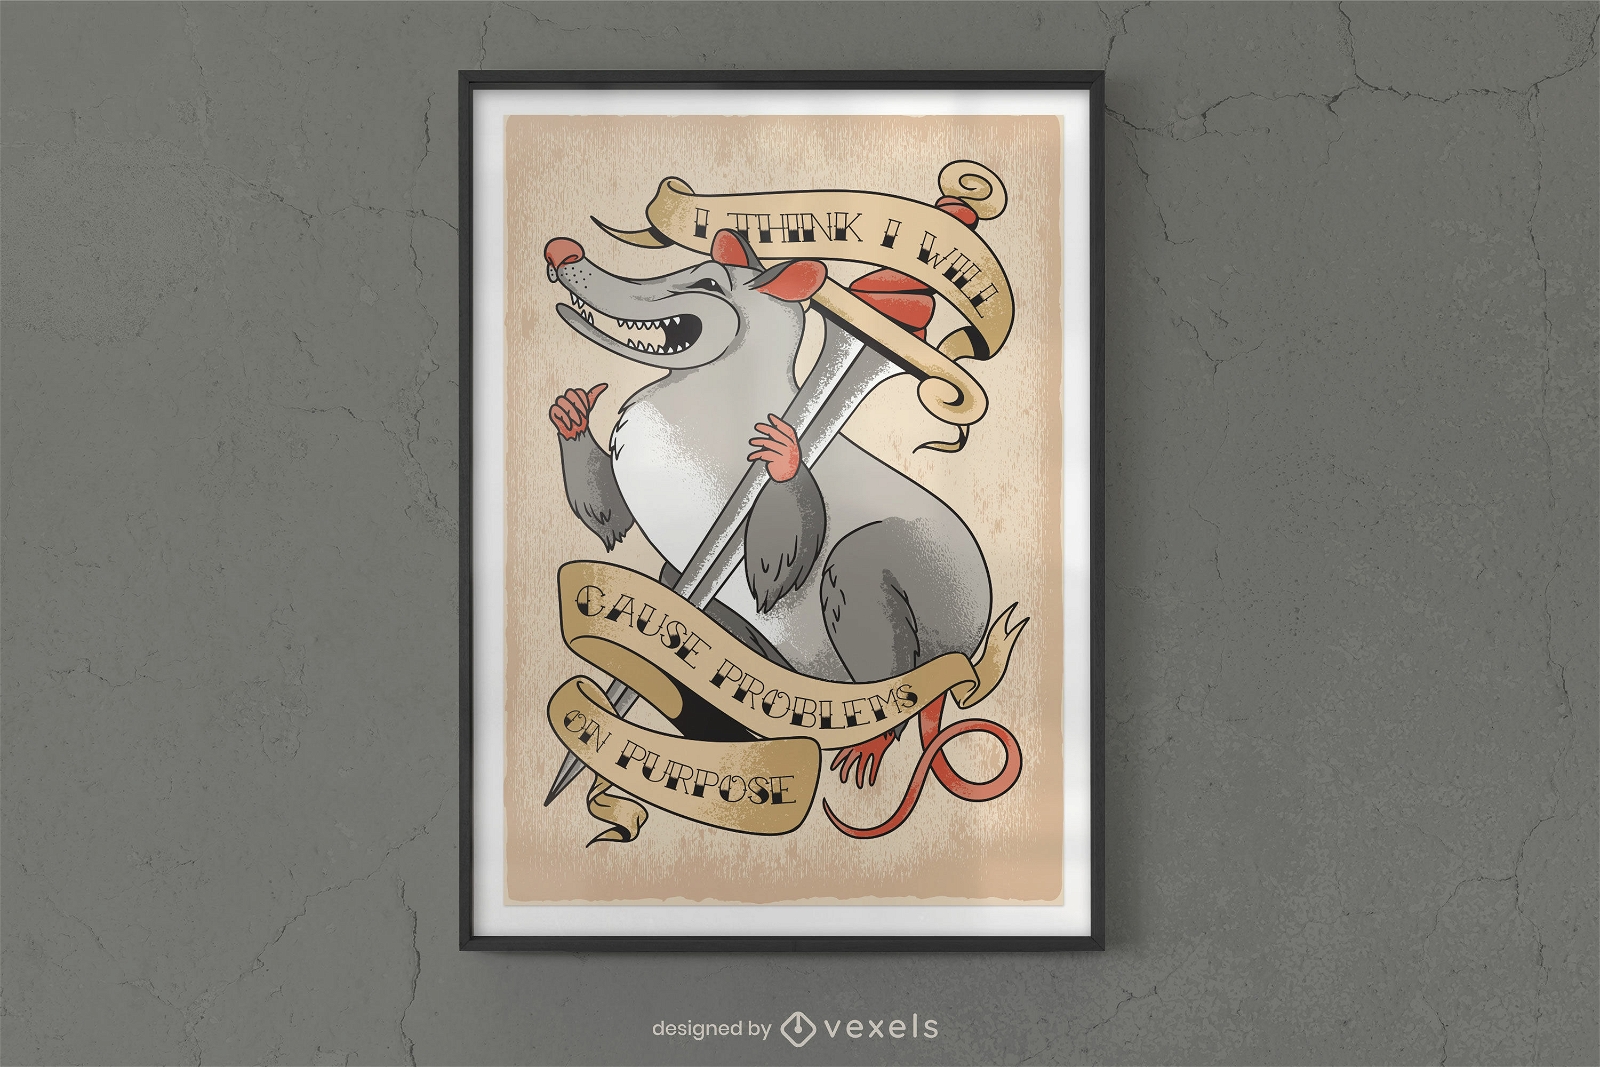 Opossum-Tier mit Dolch-Poster-Design